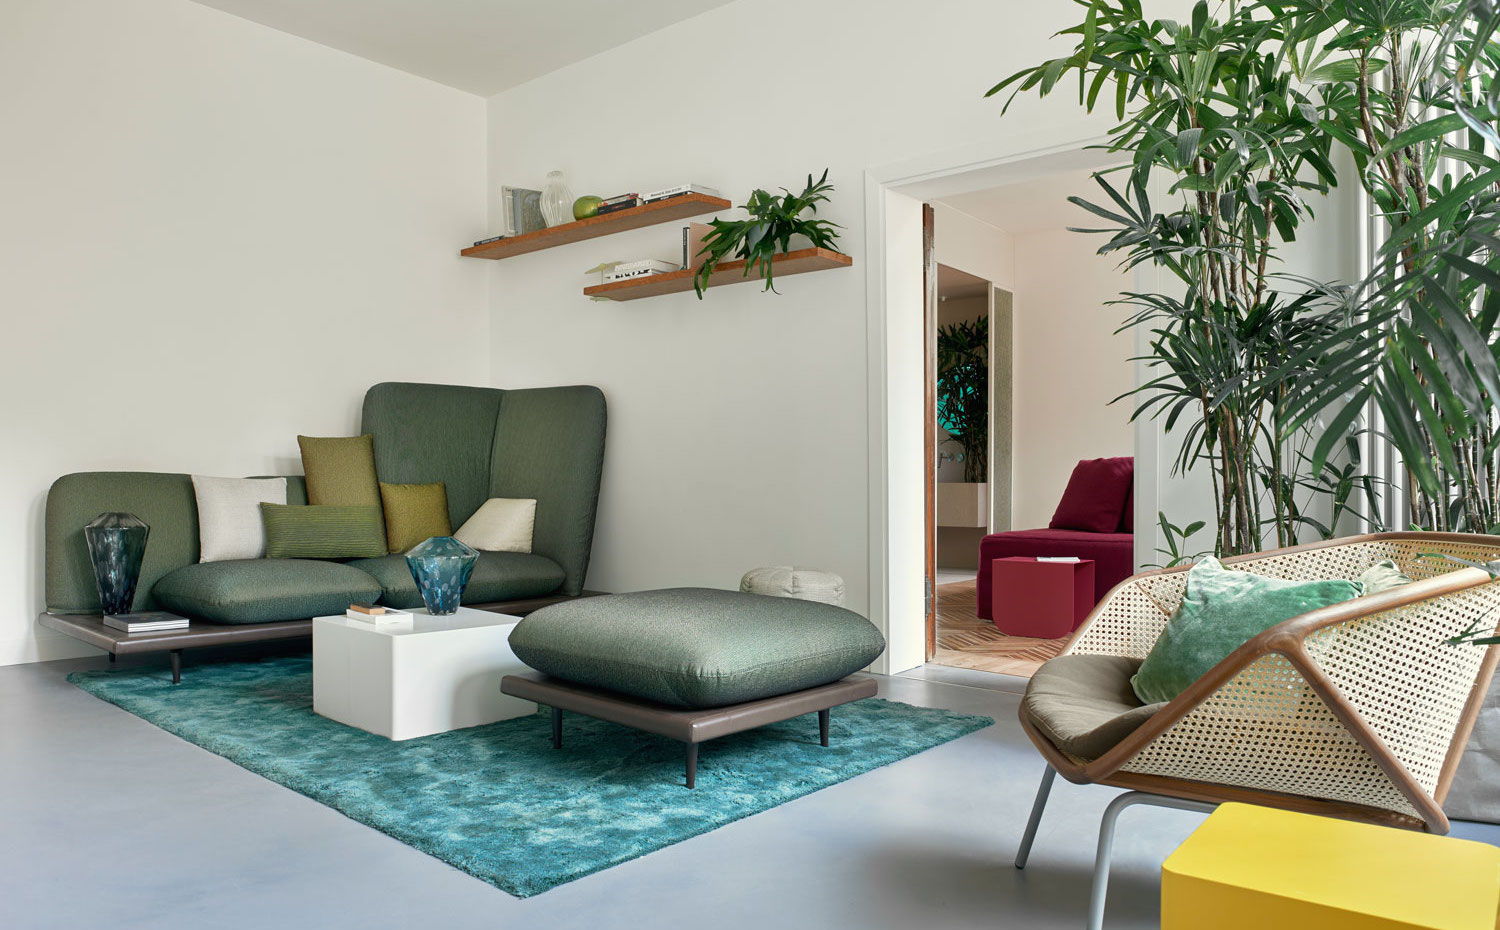 Casa Flora1. Empresas de carácter artesanal han aportado el mobiliario adaptándose al estilo contemporáneo de los arquitectos